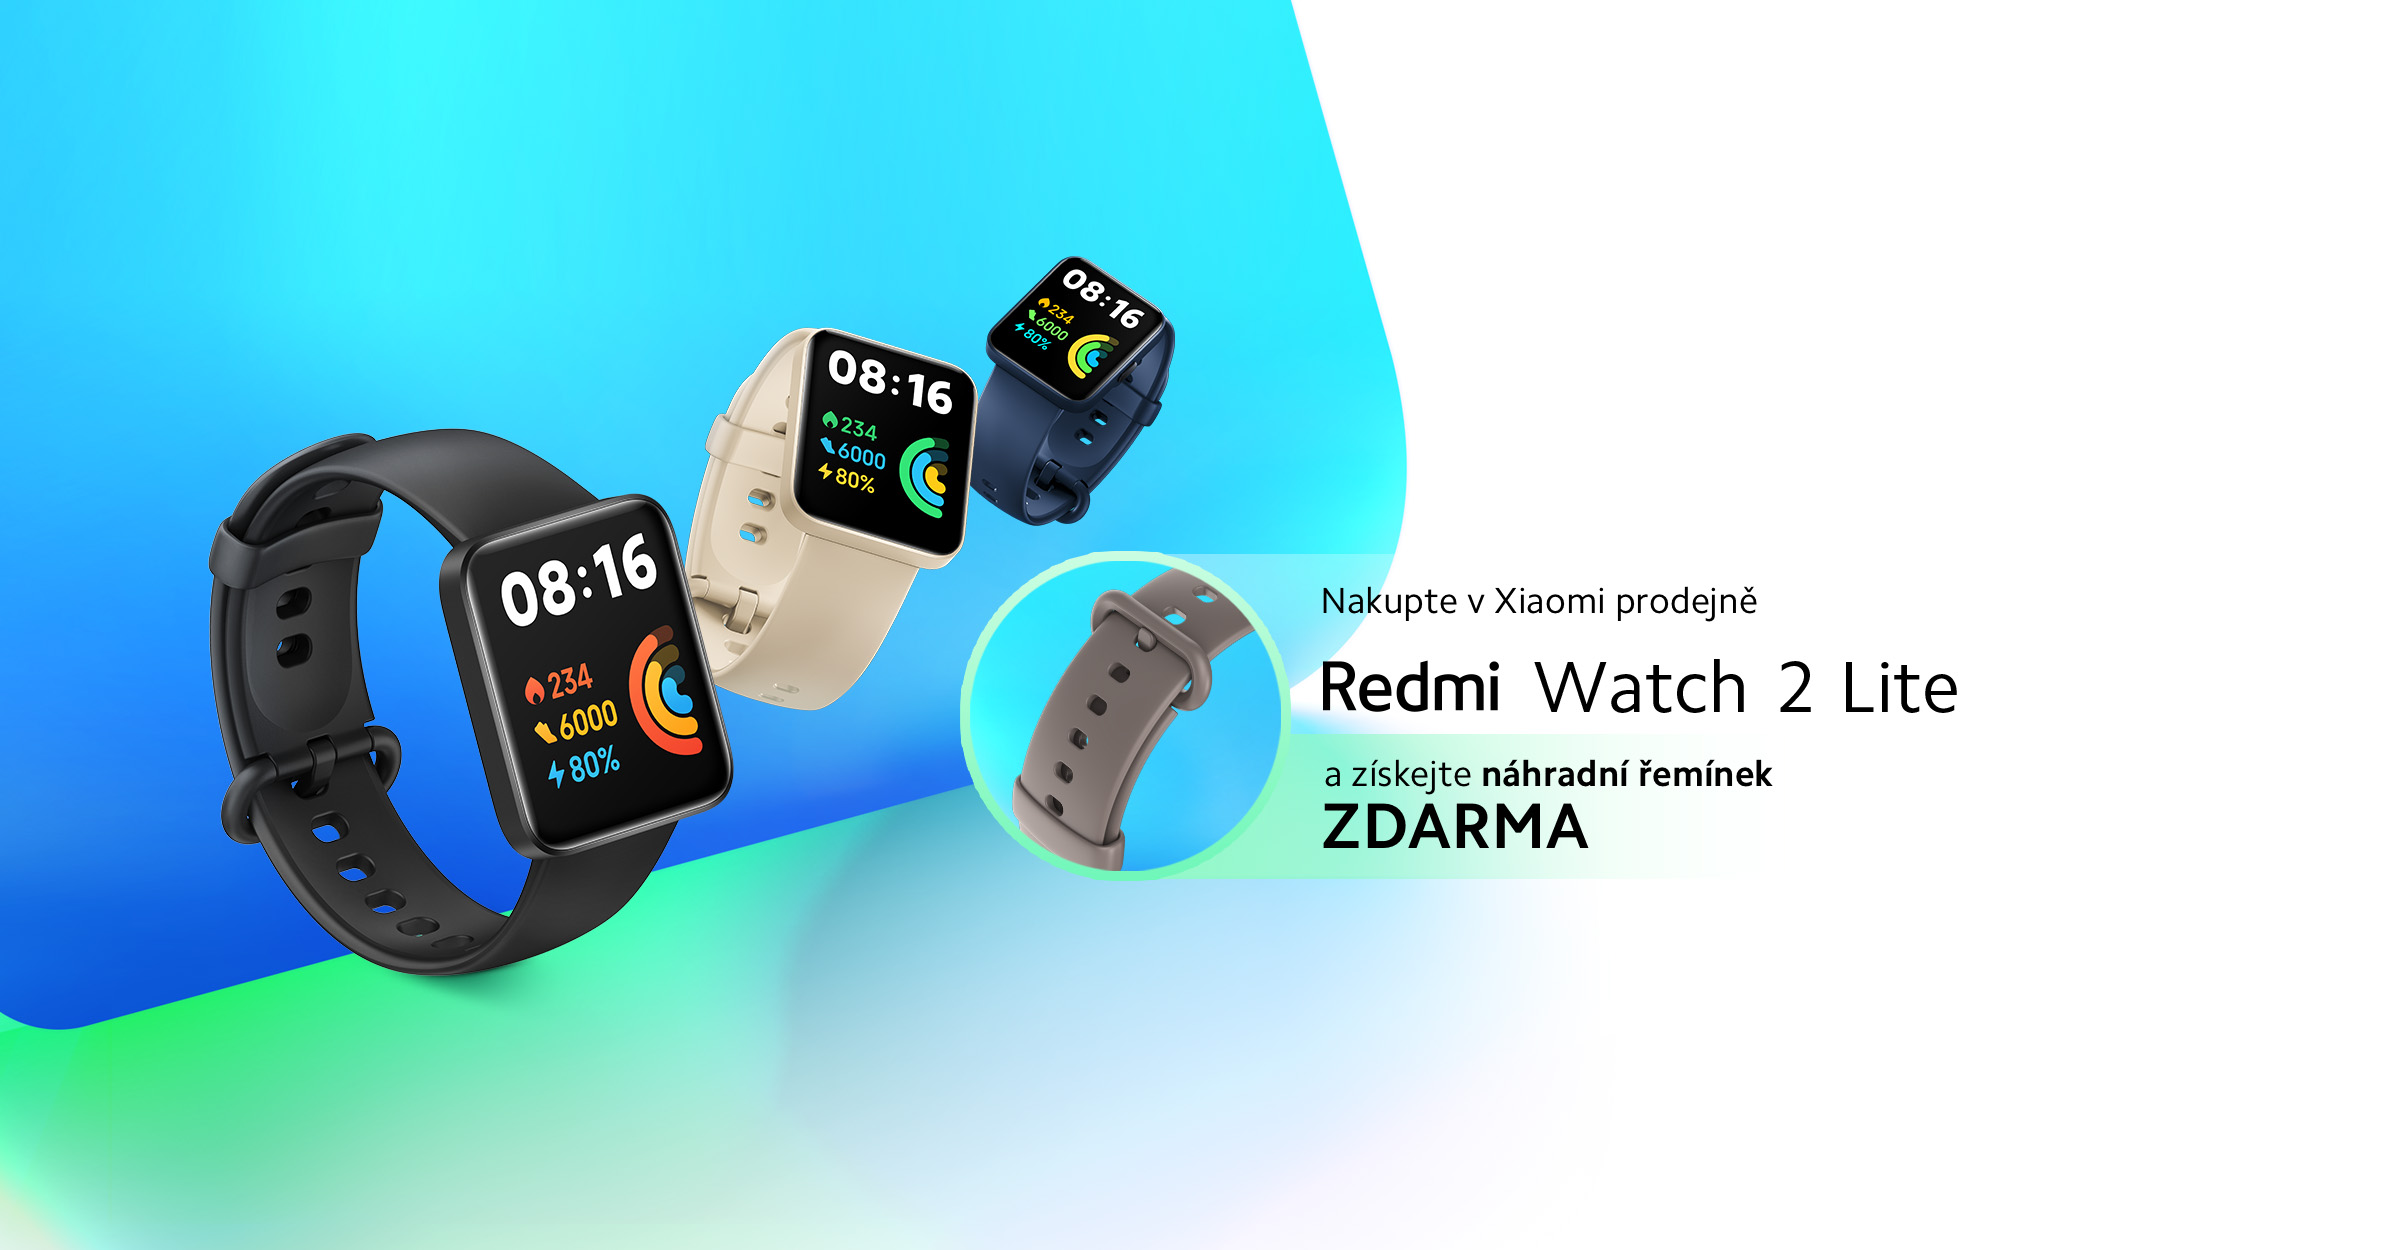 Přijďte si na prodejnu Xiaomi pro Redmi Watch 2 Lite s dárkem zdarma!